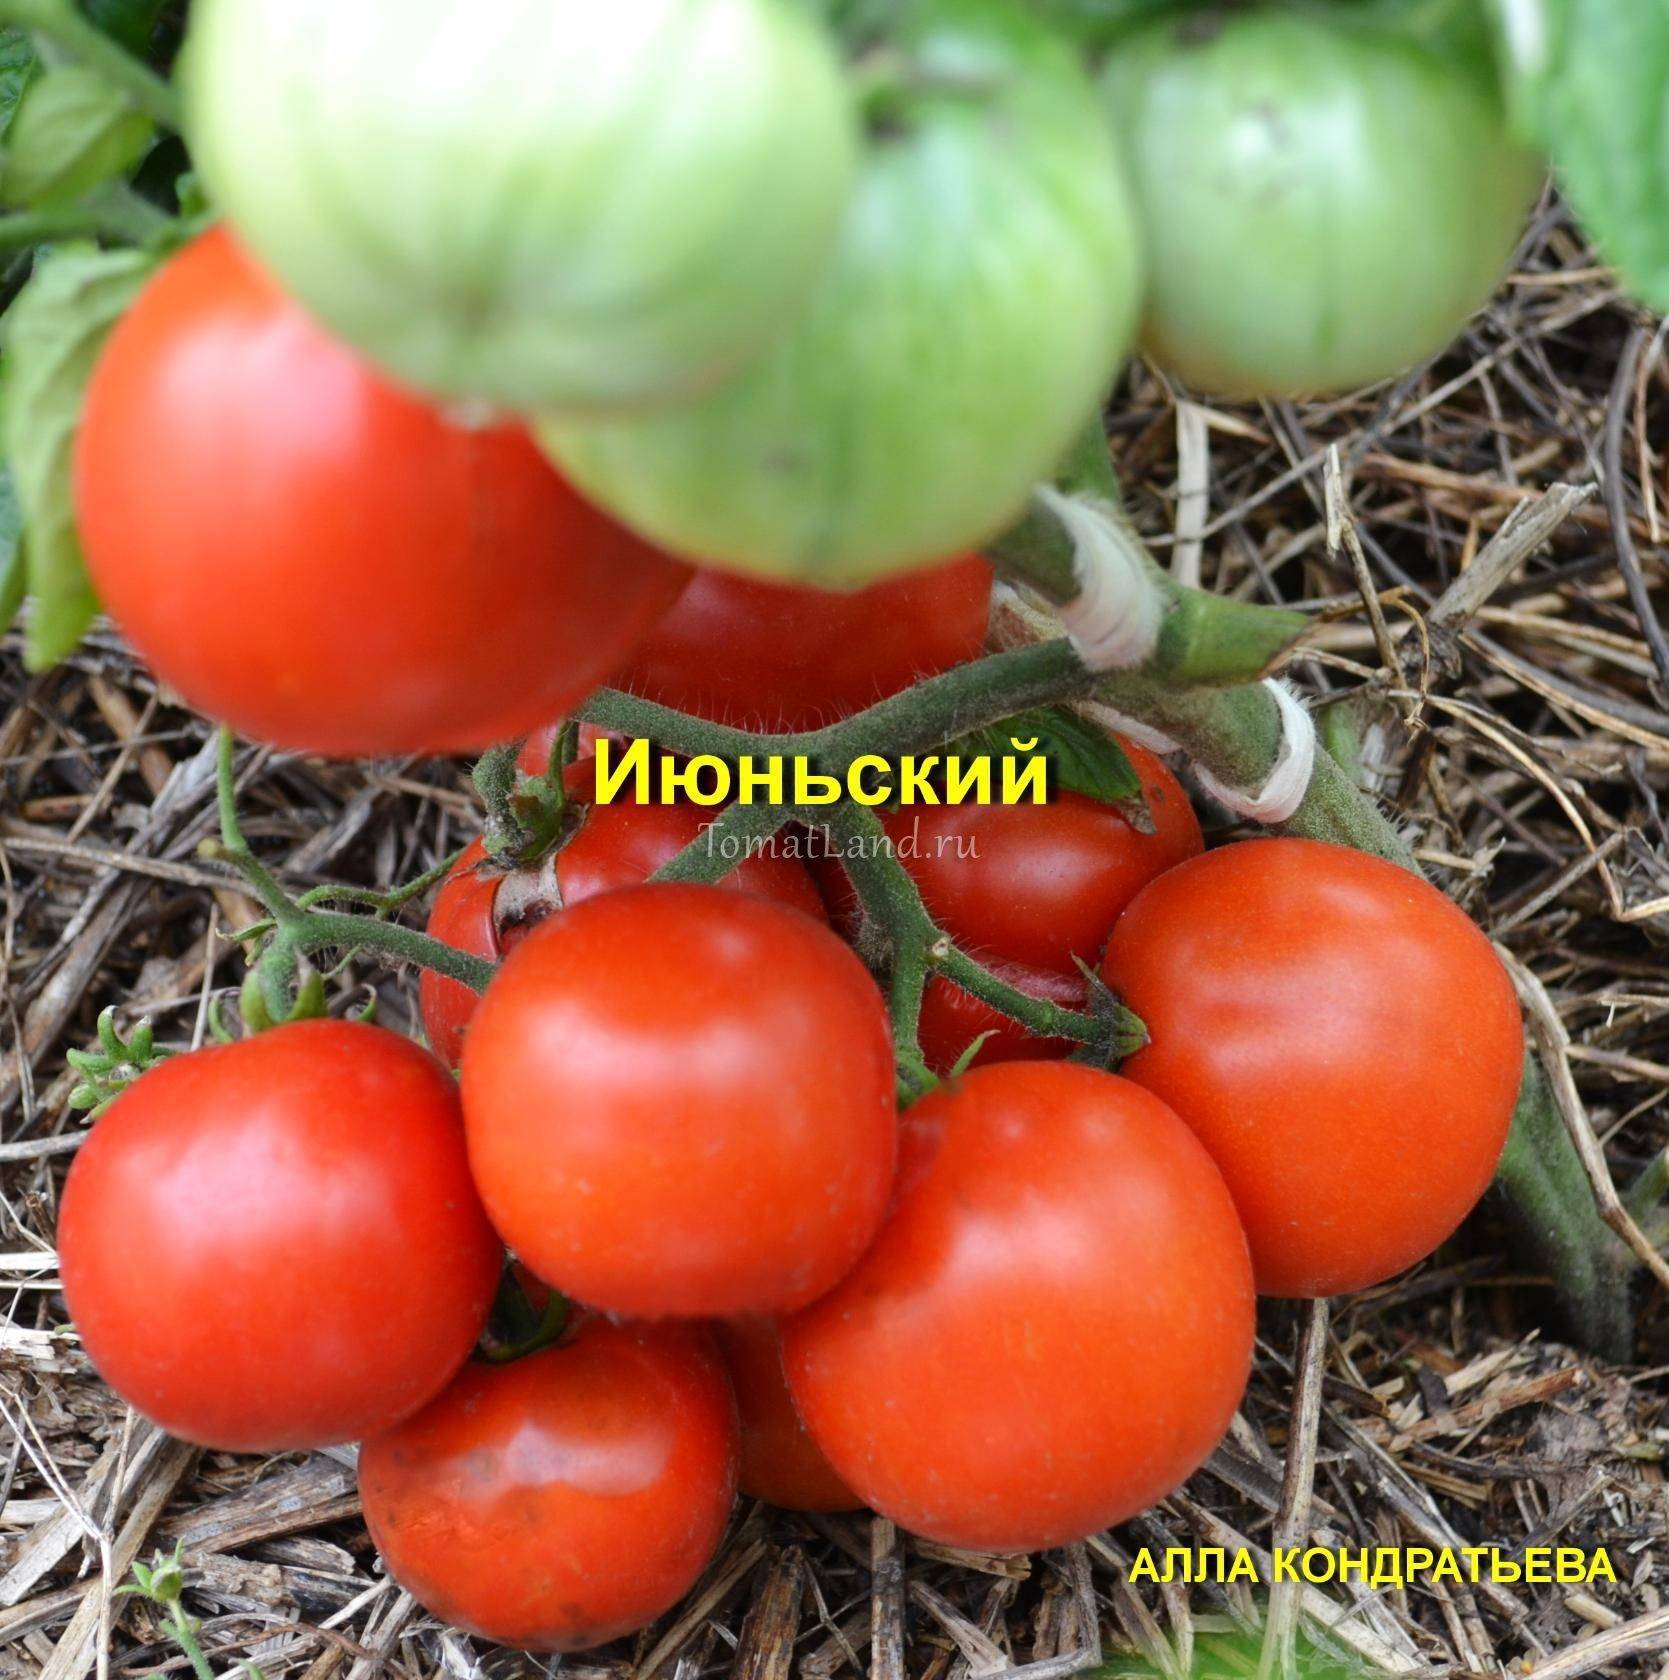 Характеристика и описание сорта томата канопус, урожайность